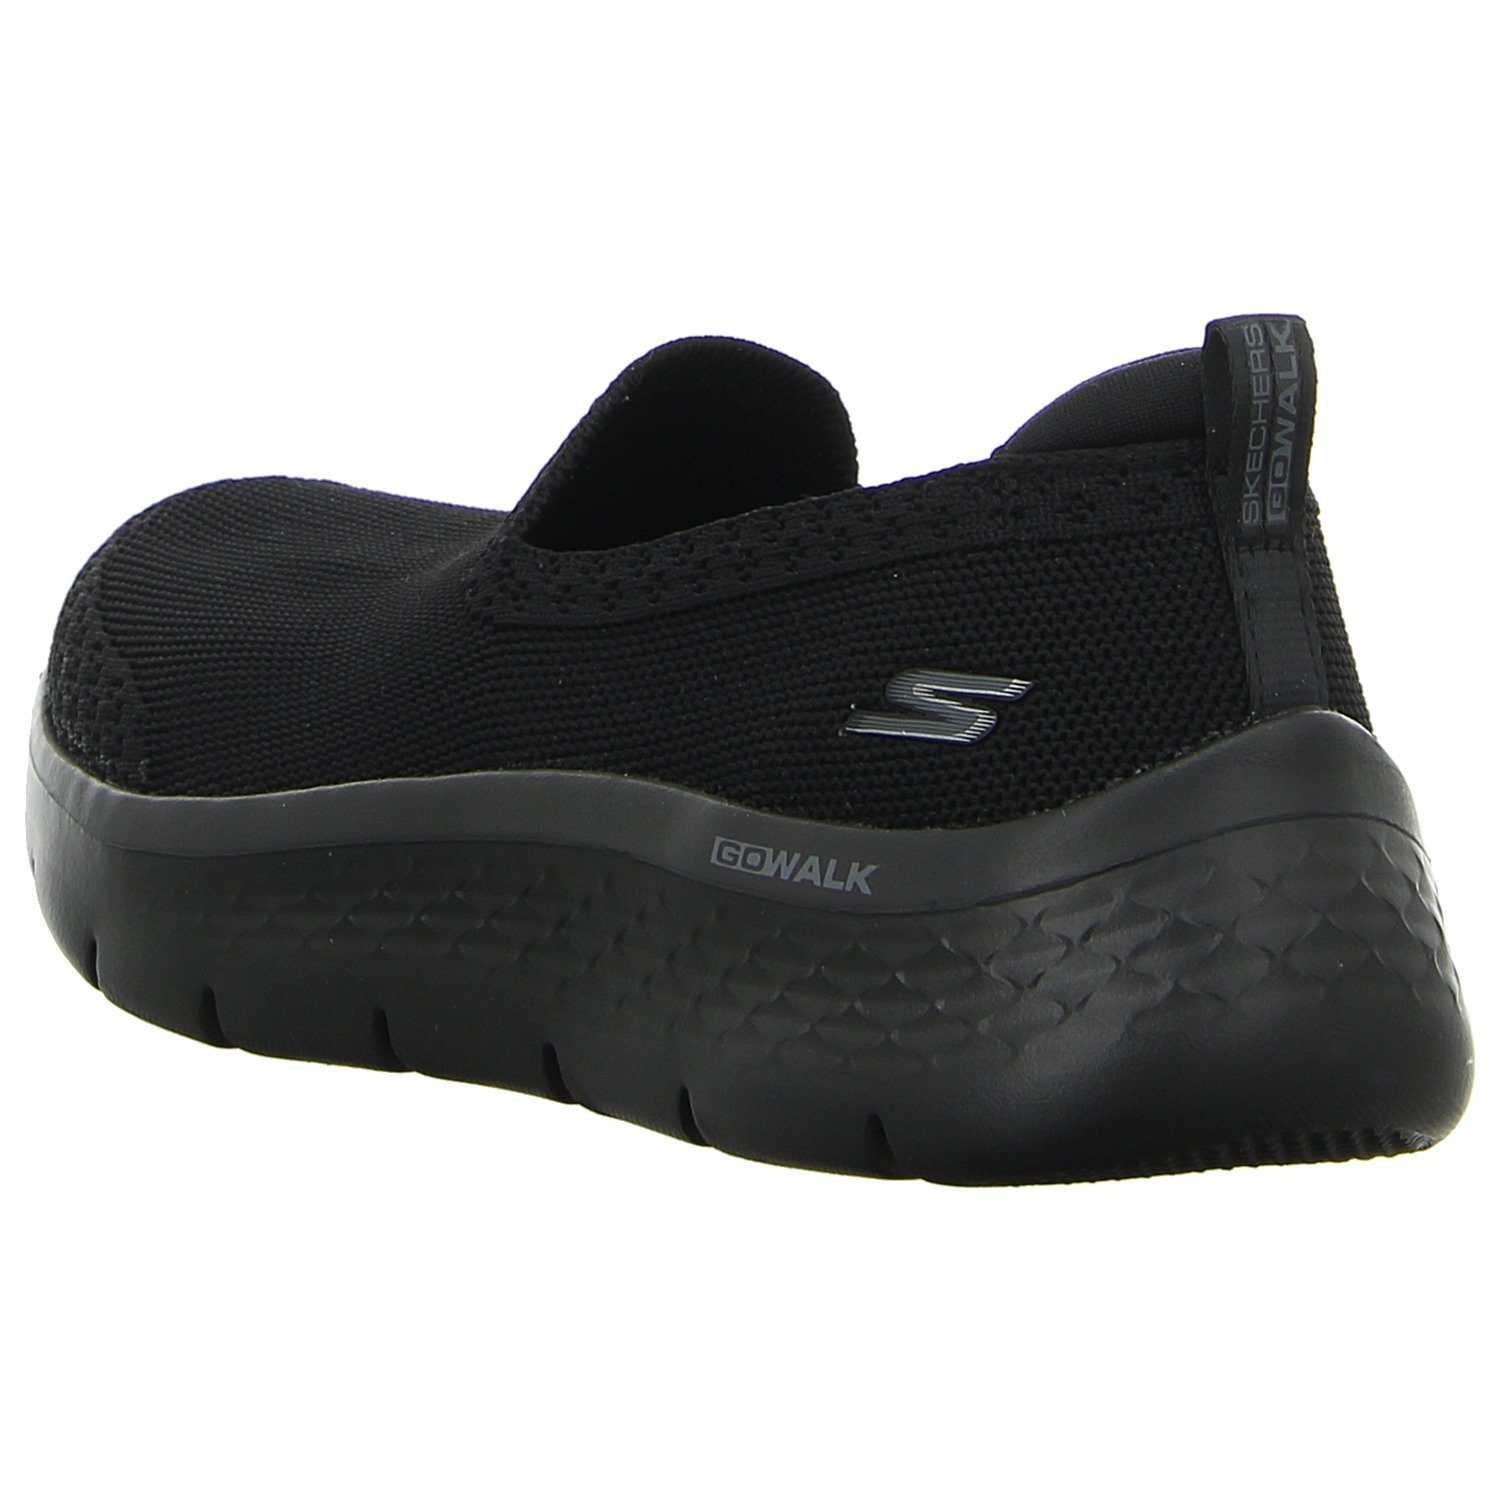 GO black/black Walk Skechers Slipper Fle Skechers